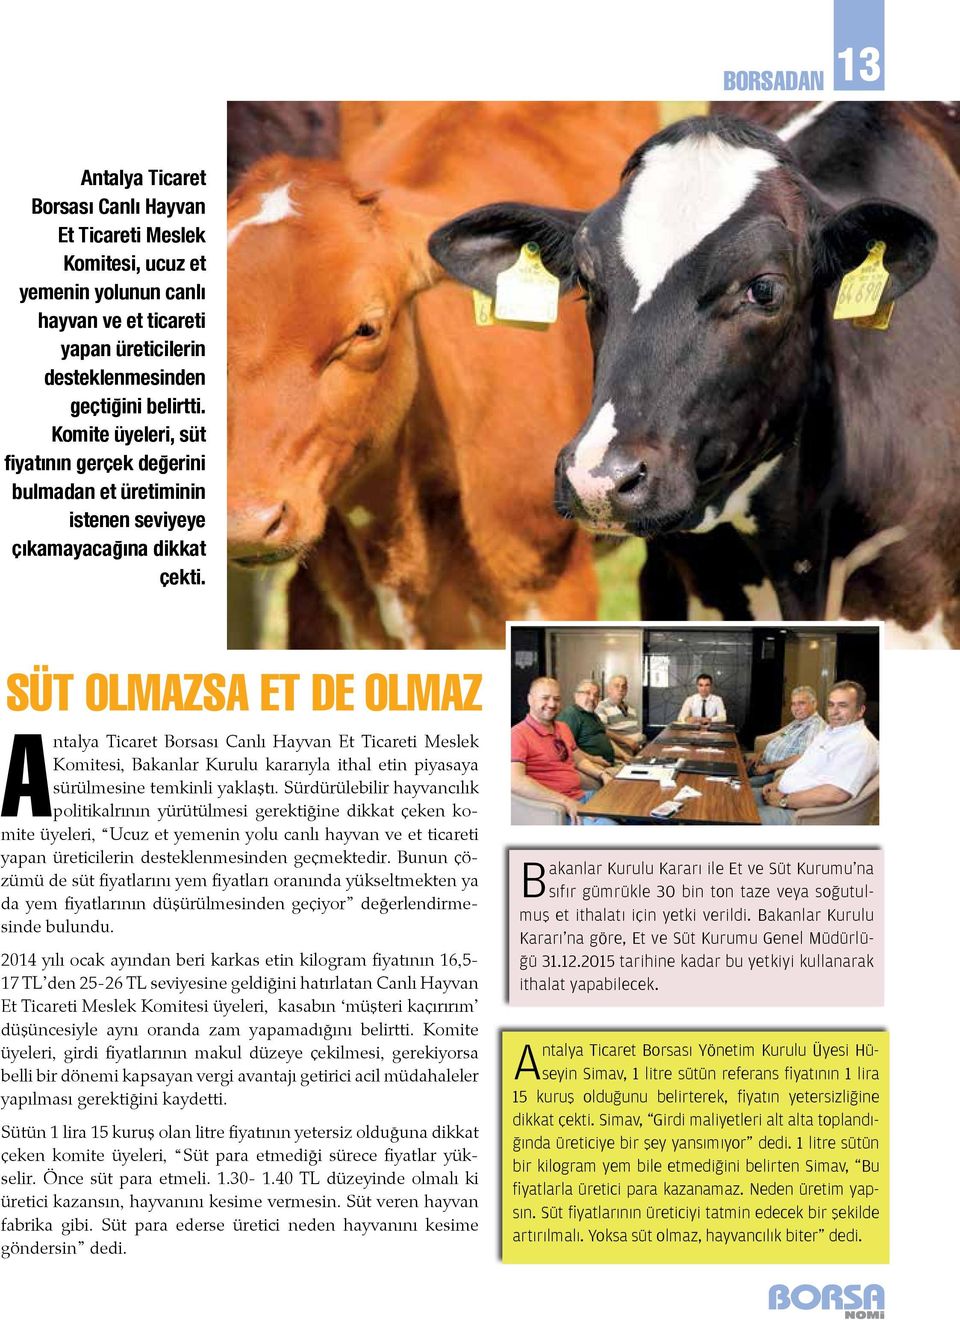 SÜT OLMAZSA ET DE OLMAZ Antalya Ticaret Borsası Canlı Hayvan Et Ticareti Meslek Komitesi, Bakanlar Kurulu kararıyla ithal etin piyasaya sürülmesine temkinli yaklaştı.